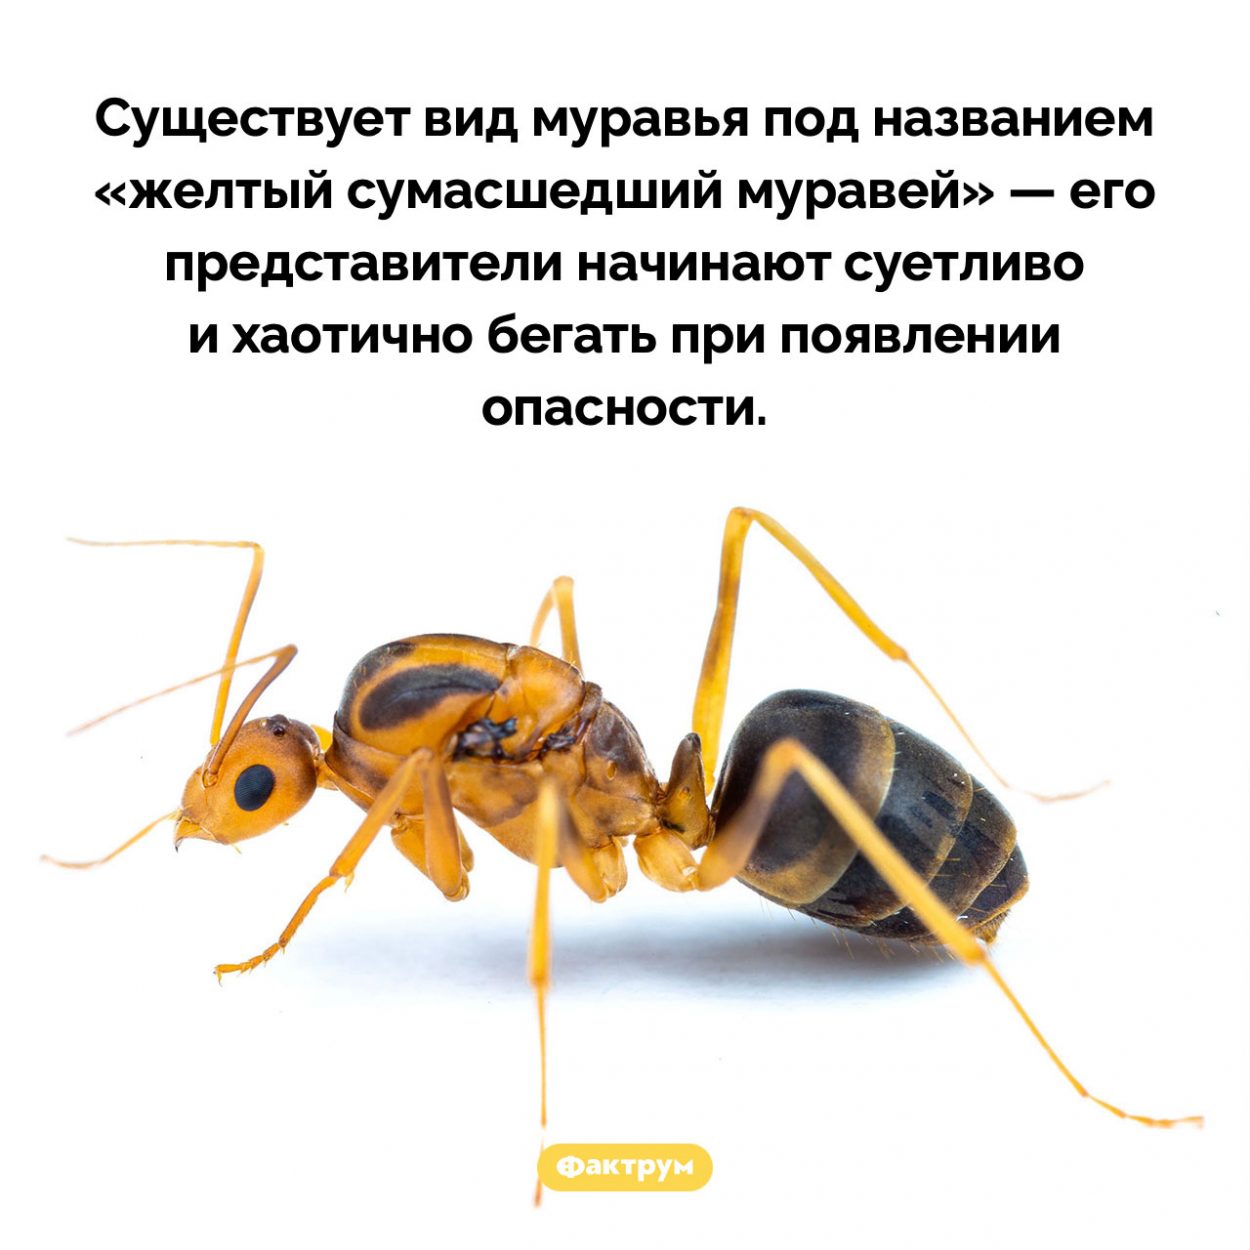 Сумасшедший муравей. Существует вид муравья под названием «желтый сумасшедший муравей» — его представители начинают суетливо и хаотично бегать при появлении опасности.